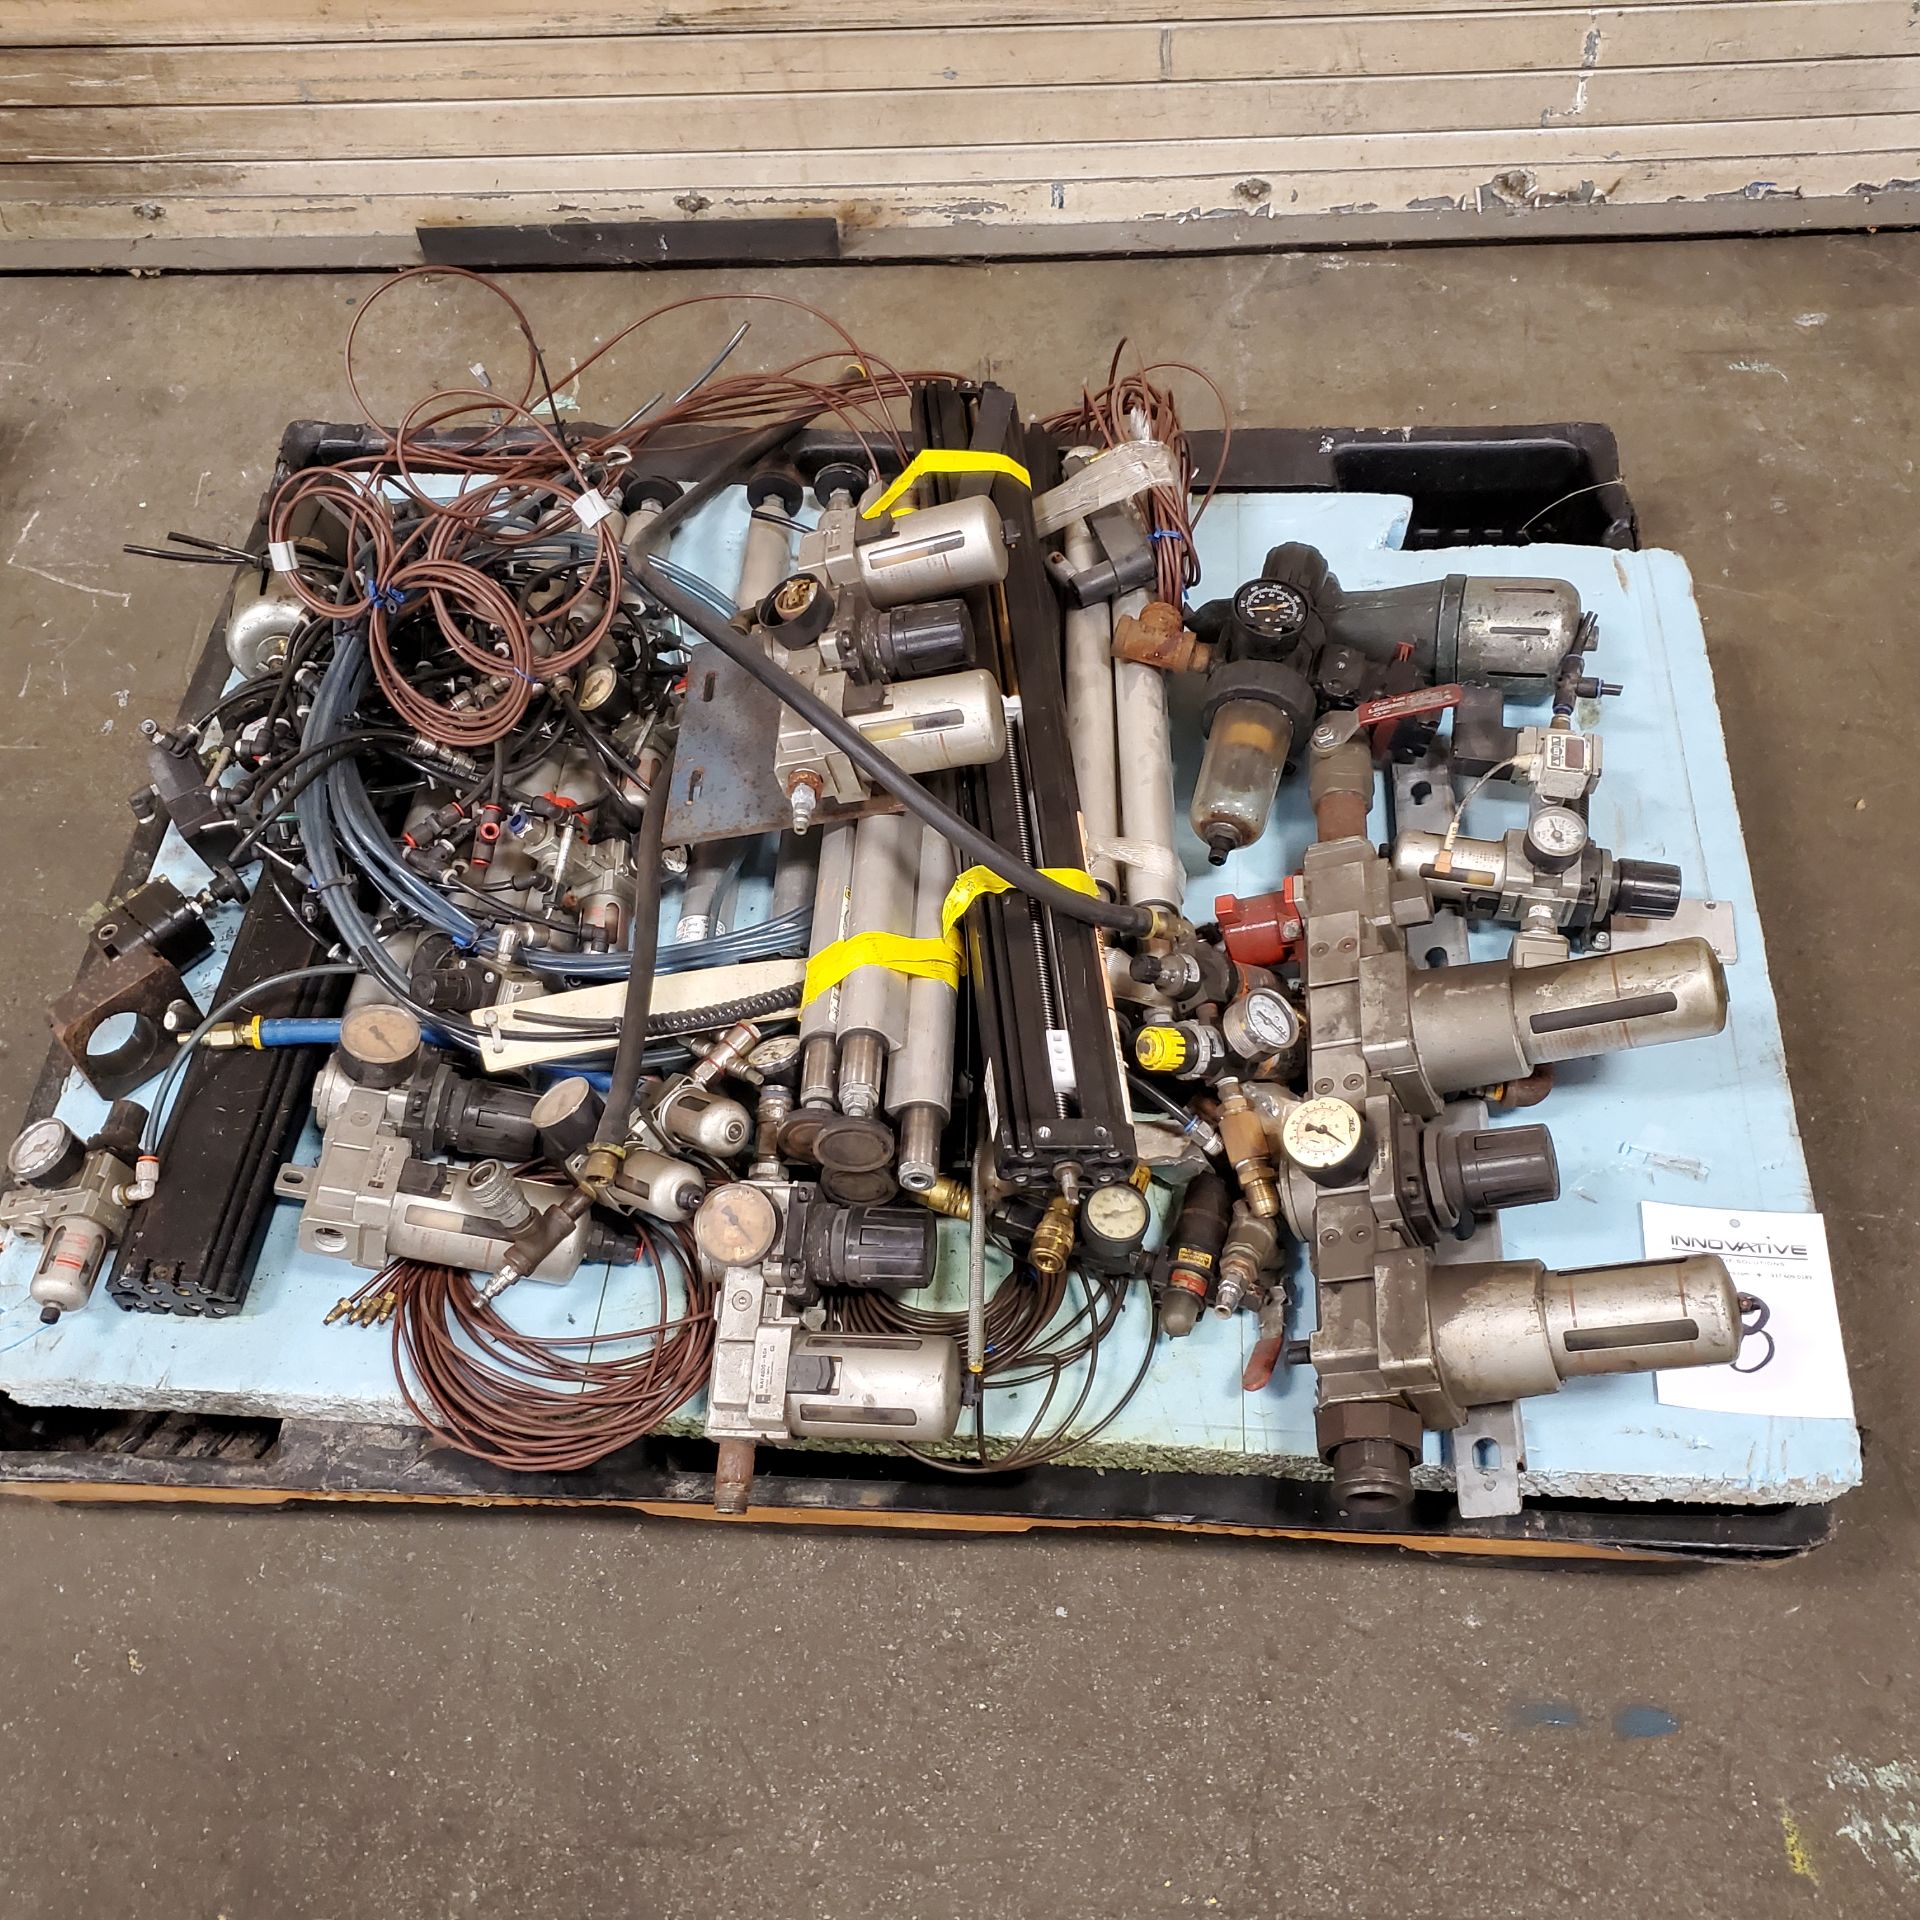 Miscellaneous Machine Parts